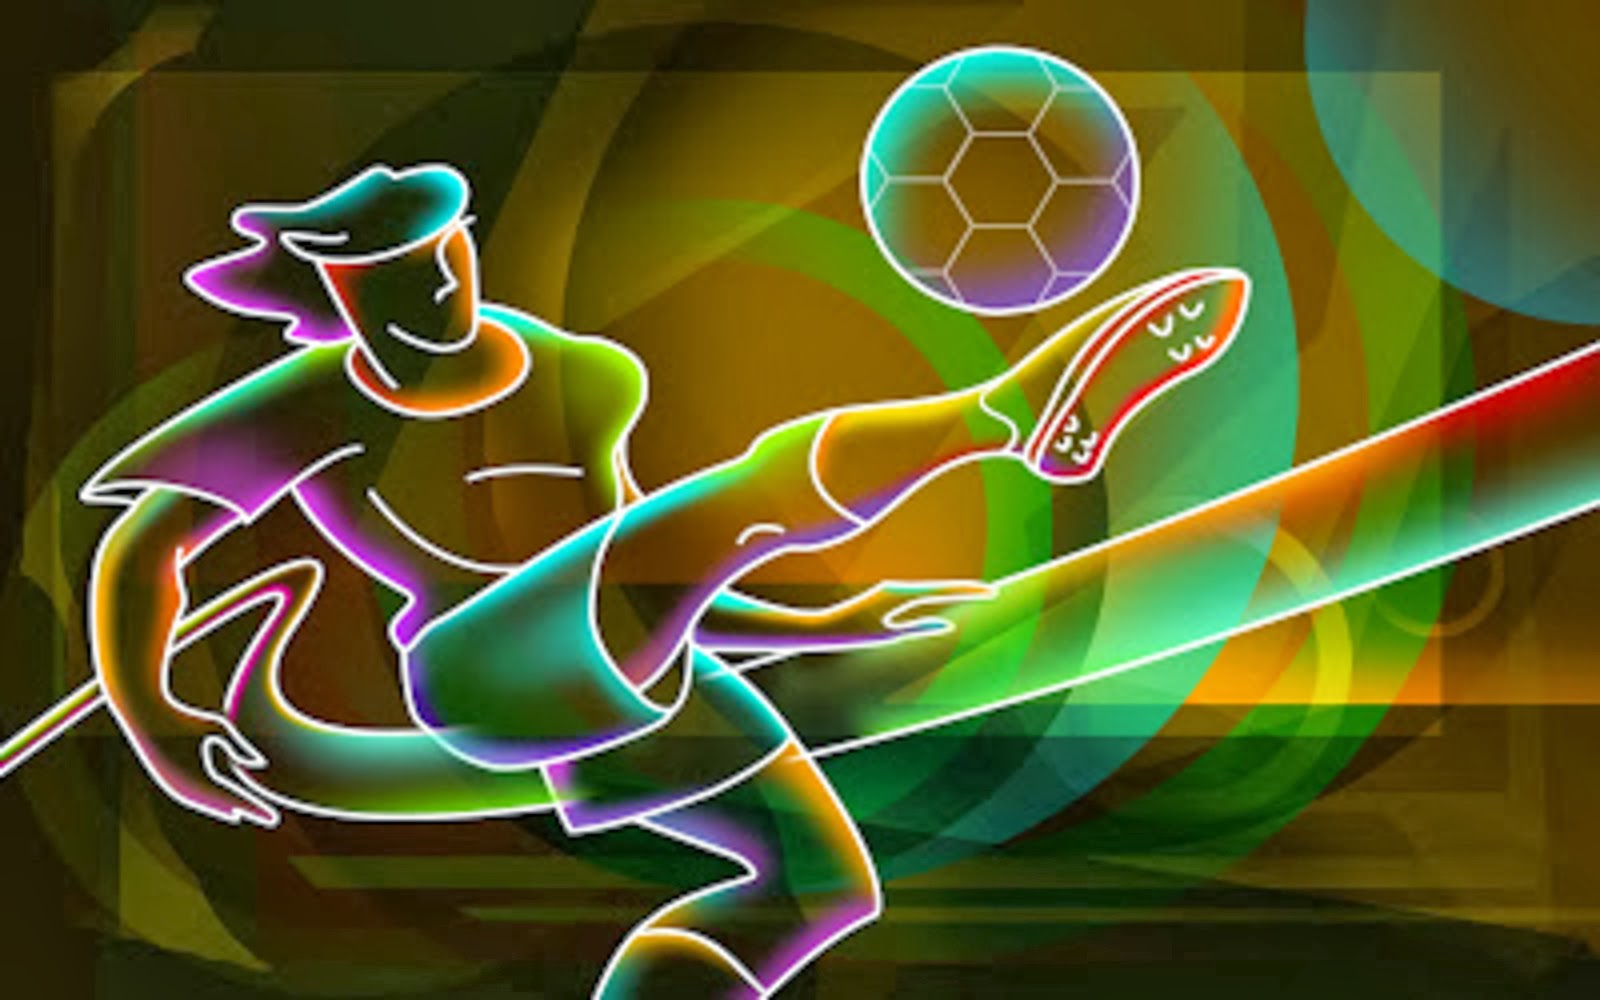 Wallpaper Atau DP BBM Soccer Football Keren 2015 Khusus Android 2015